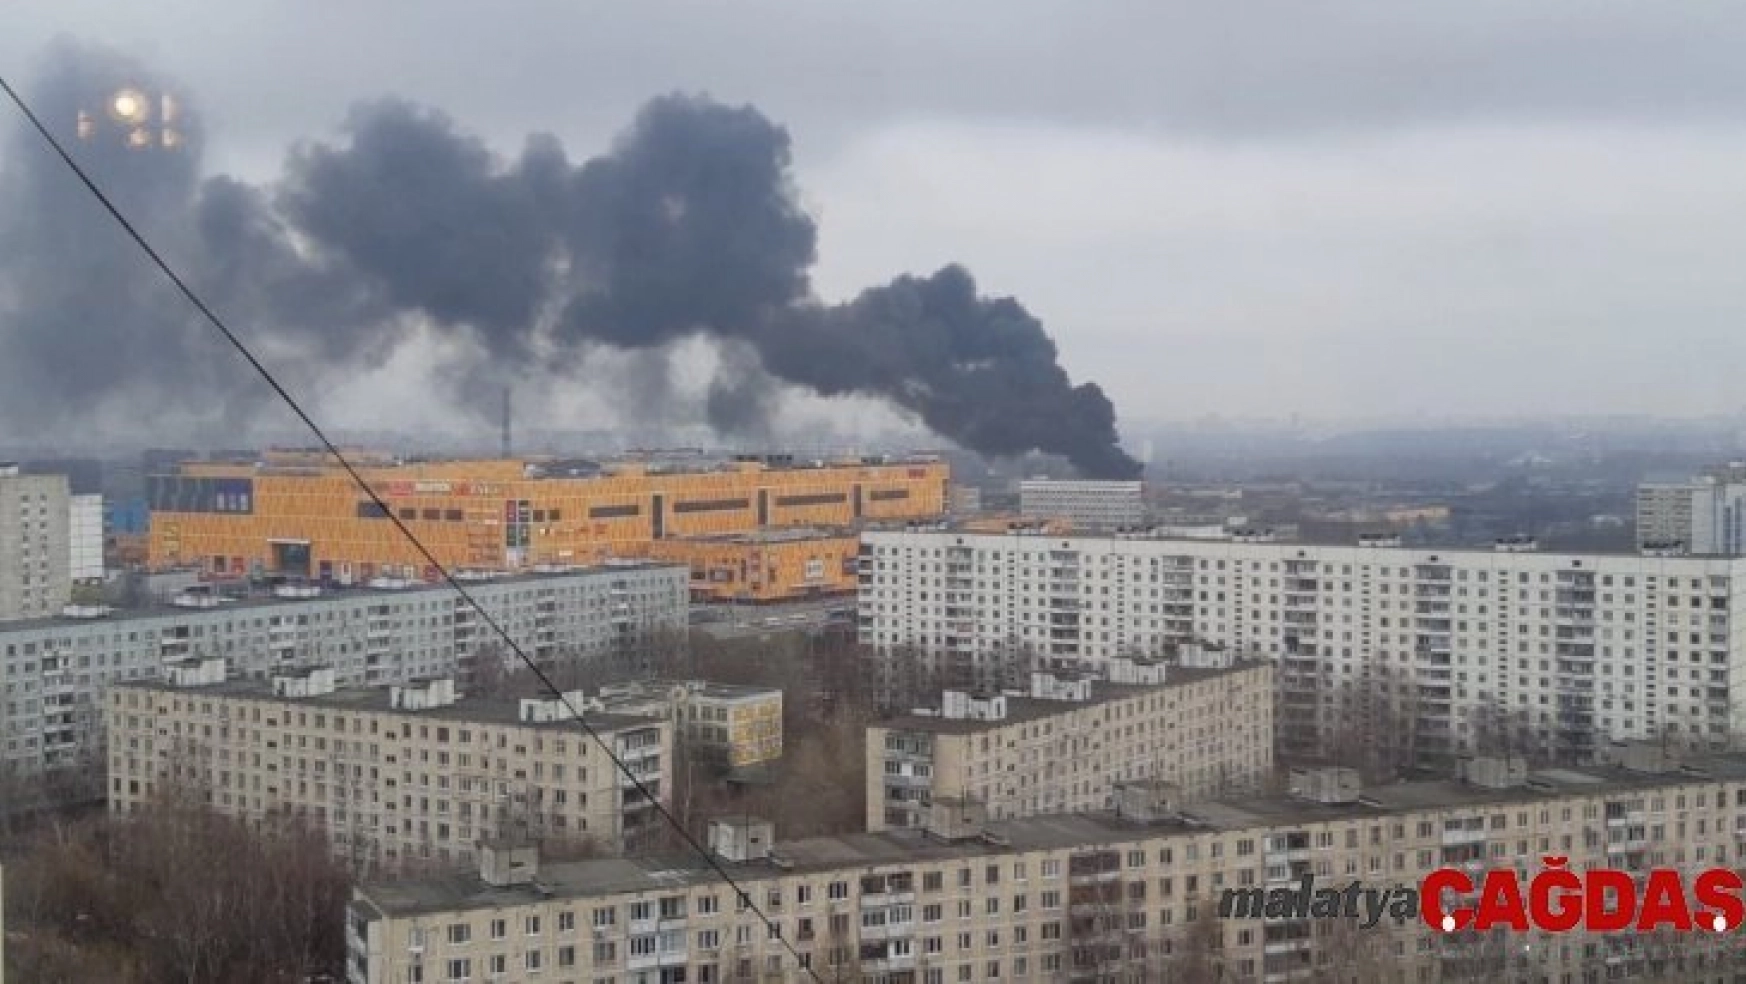 Rusya'da sanayi sitesinde büyük yangın